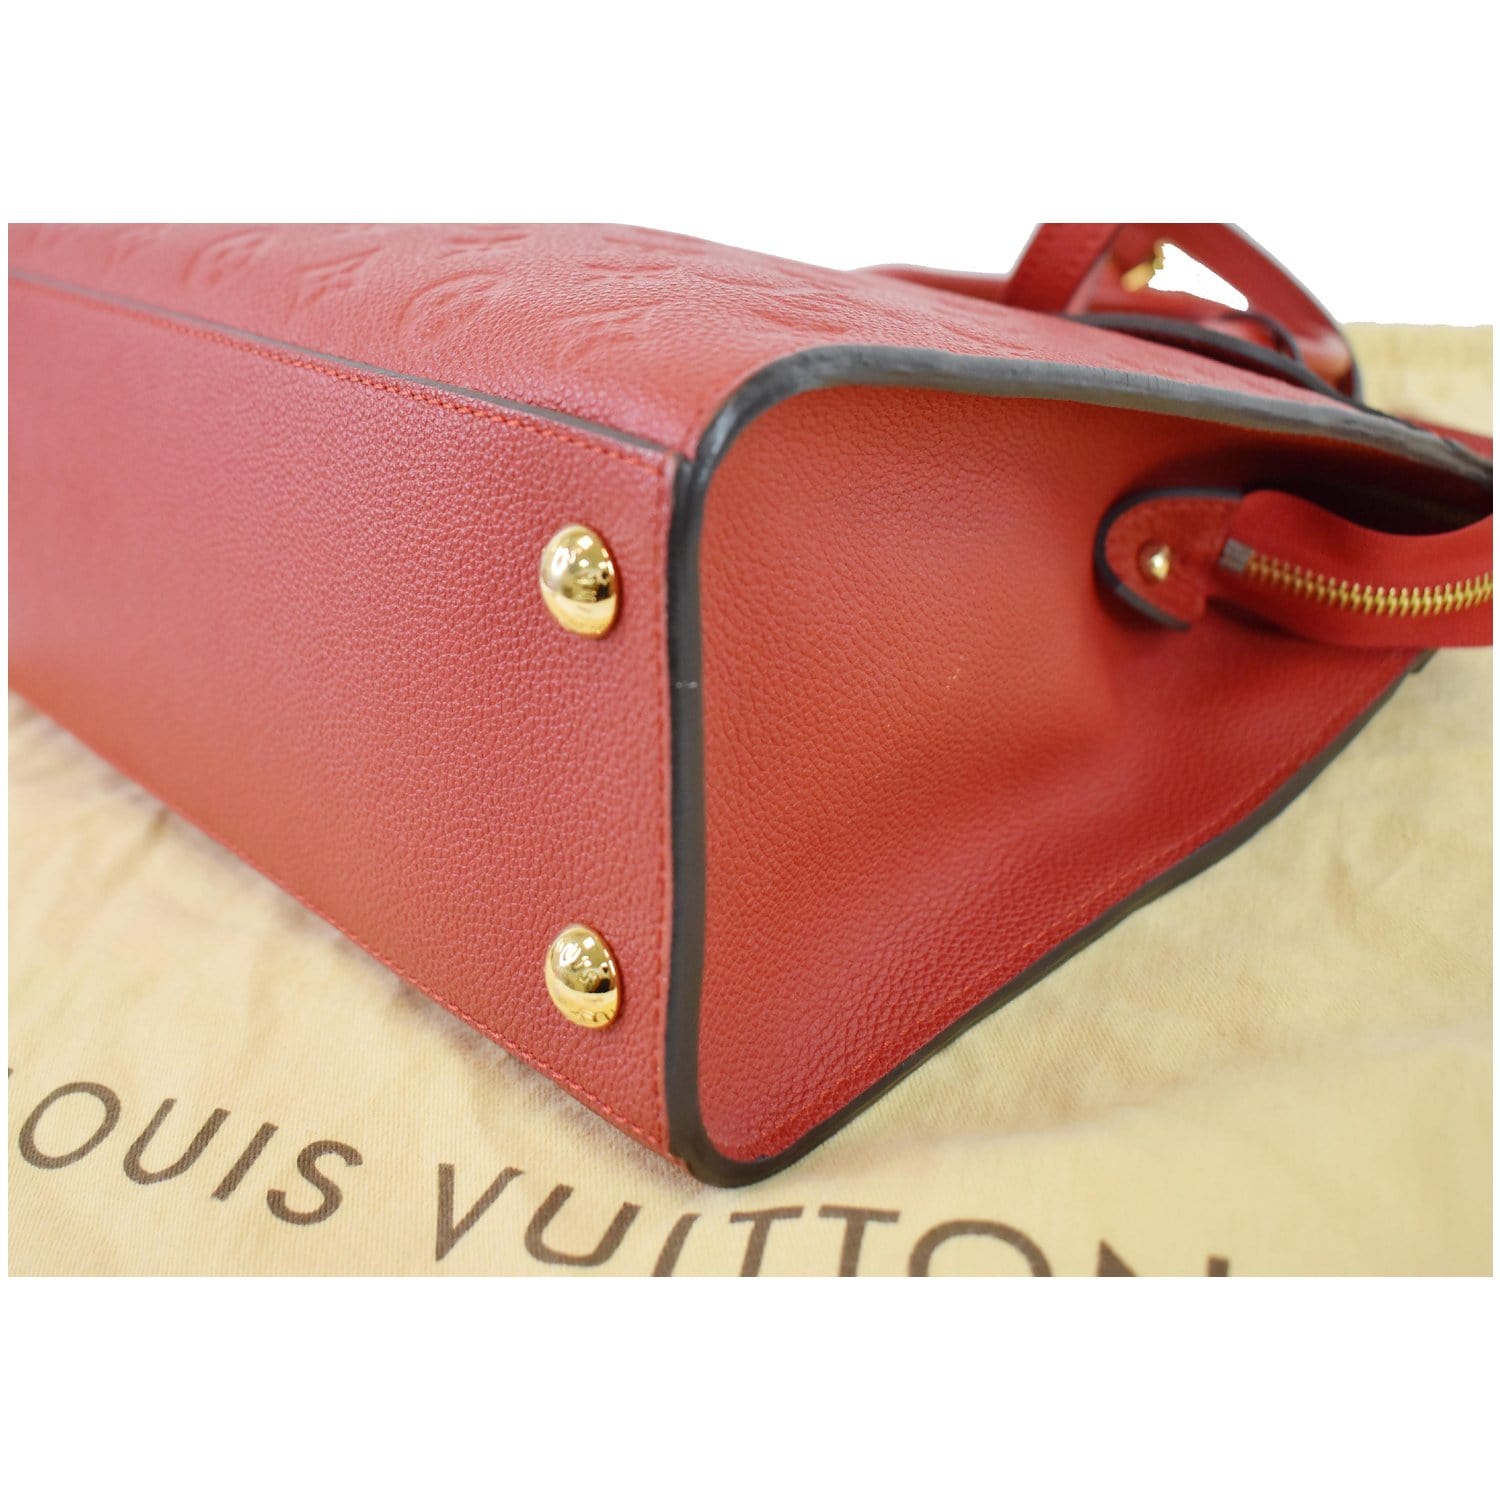 Louis Vuitton Monogram Empreinte Leather NéoNoé MM Navy and Red